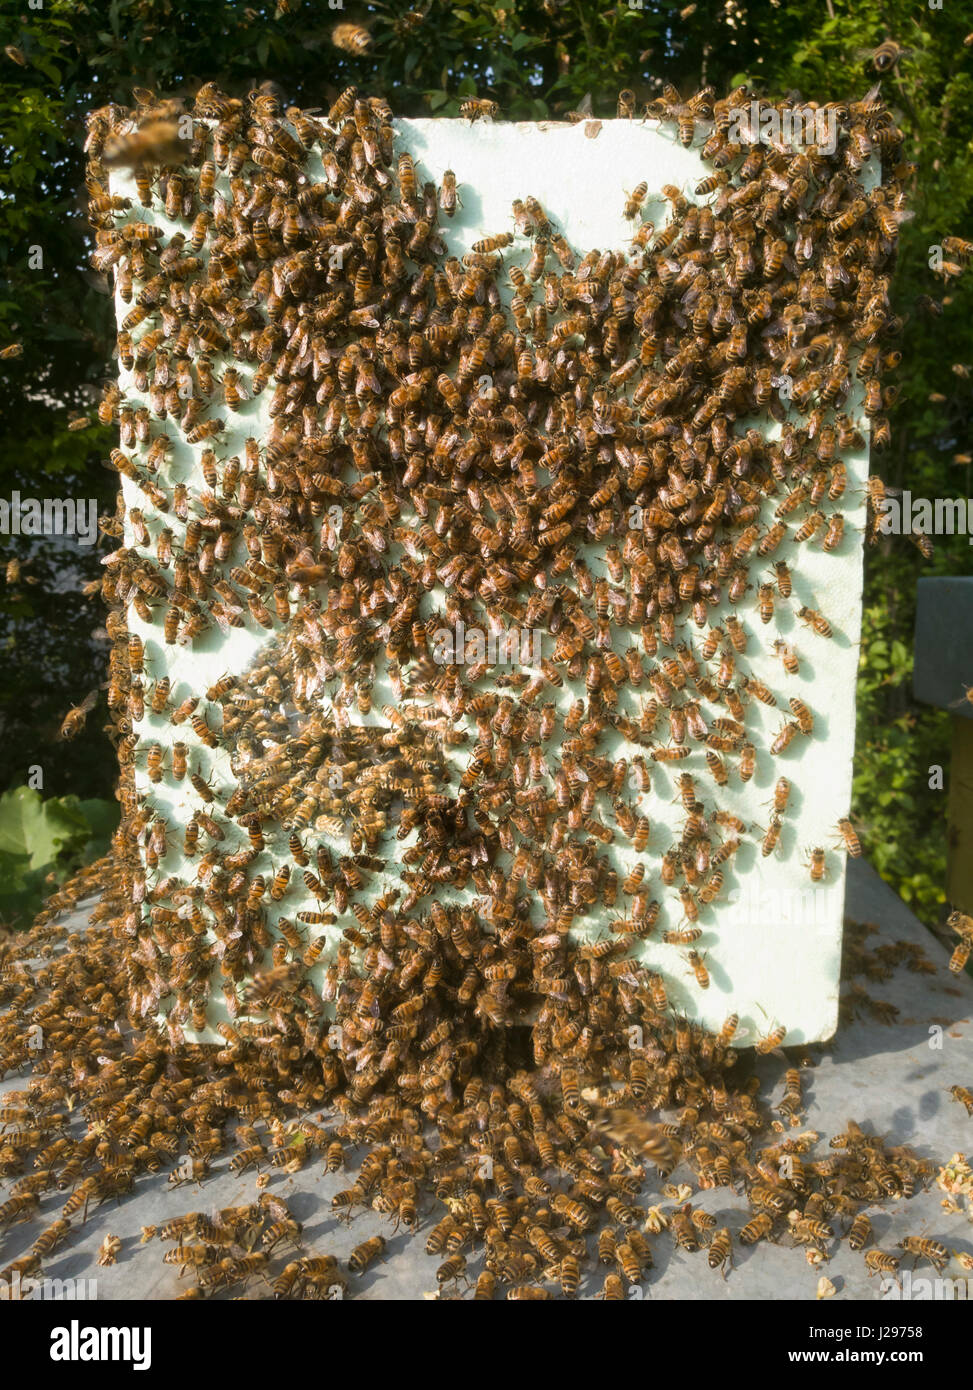 swarm of bees Stock Photo